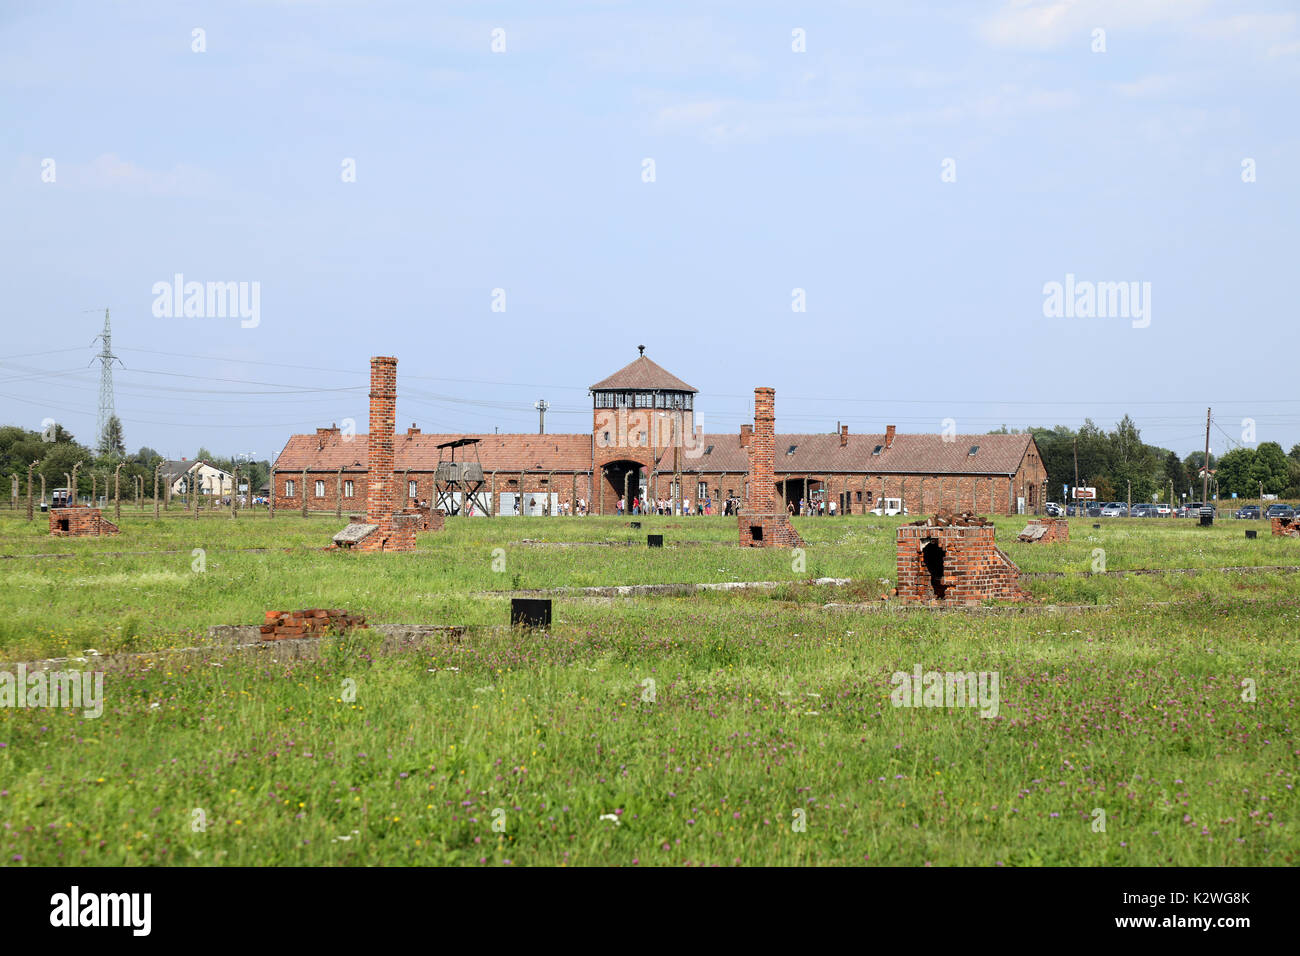 Die nationalsozialistischen Konzentrationslager Auschwitz Birkenau, in der Nähe der Stadt Oświęcim, Polen, fotografiert am 25. August 2017. Der Haupteingang zum Cam Stockfoto